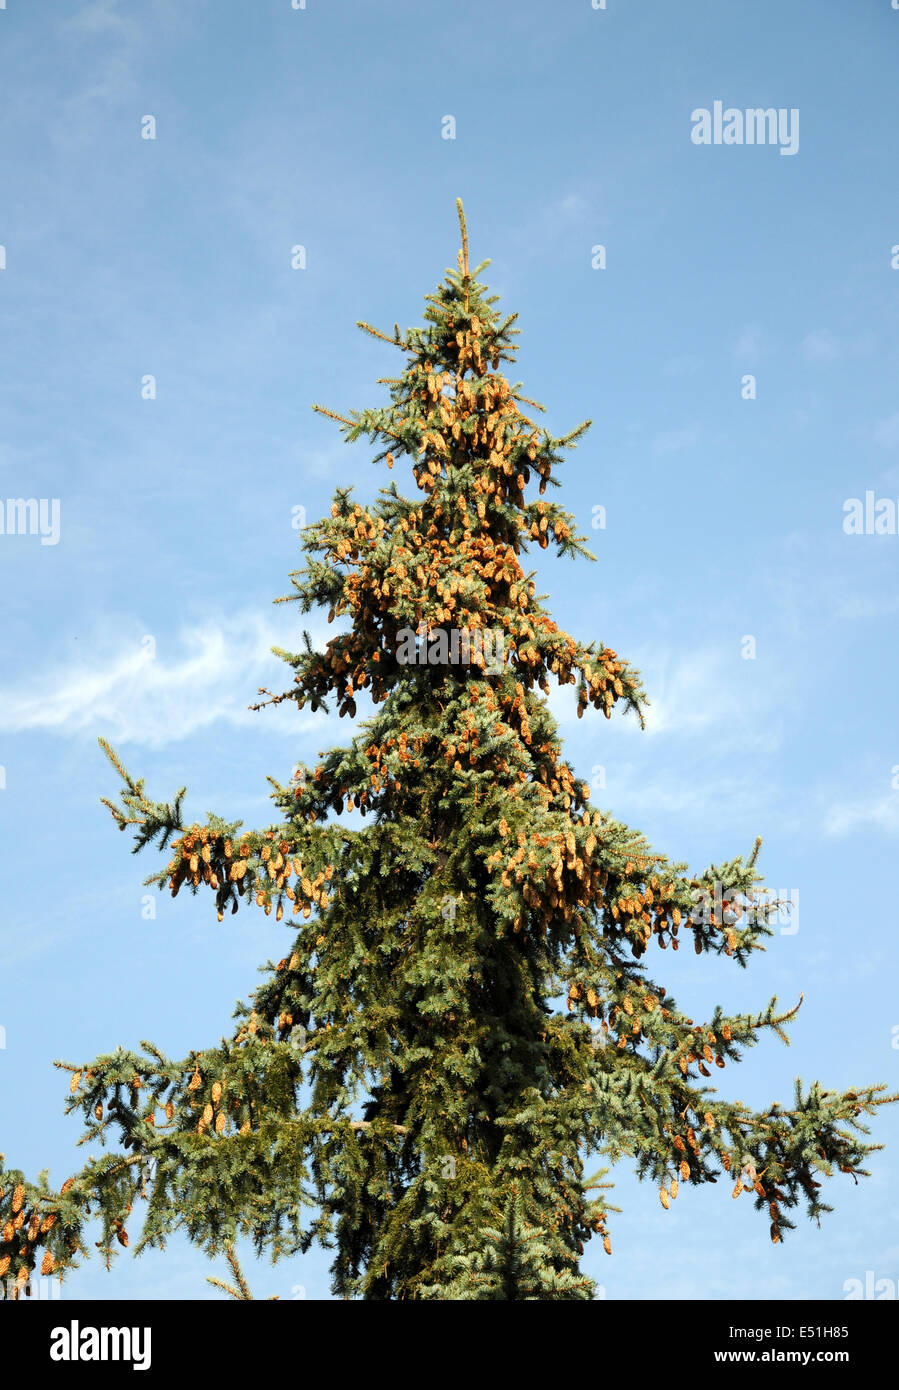 Colorado spruce with cones Stock Photo